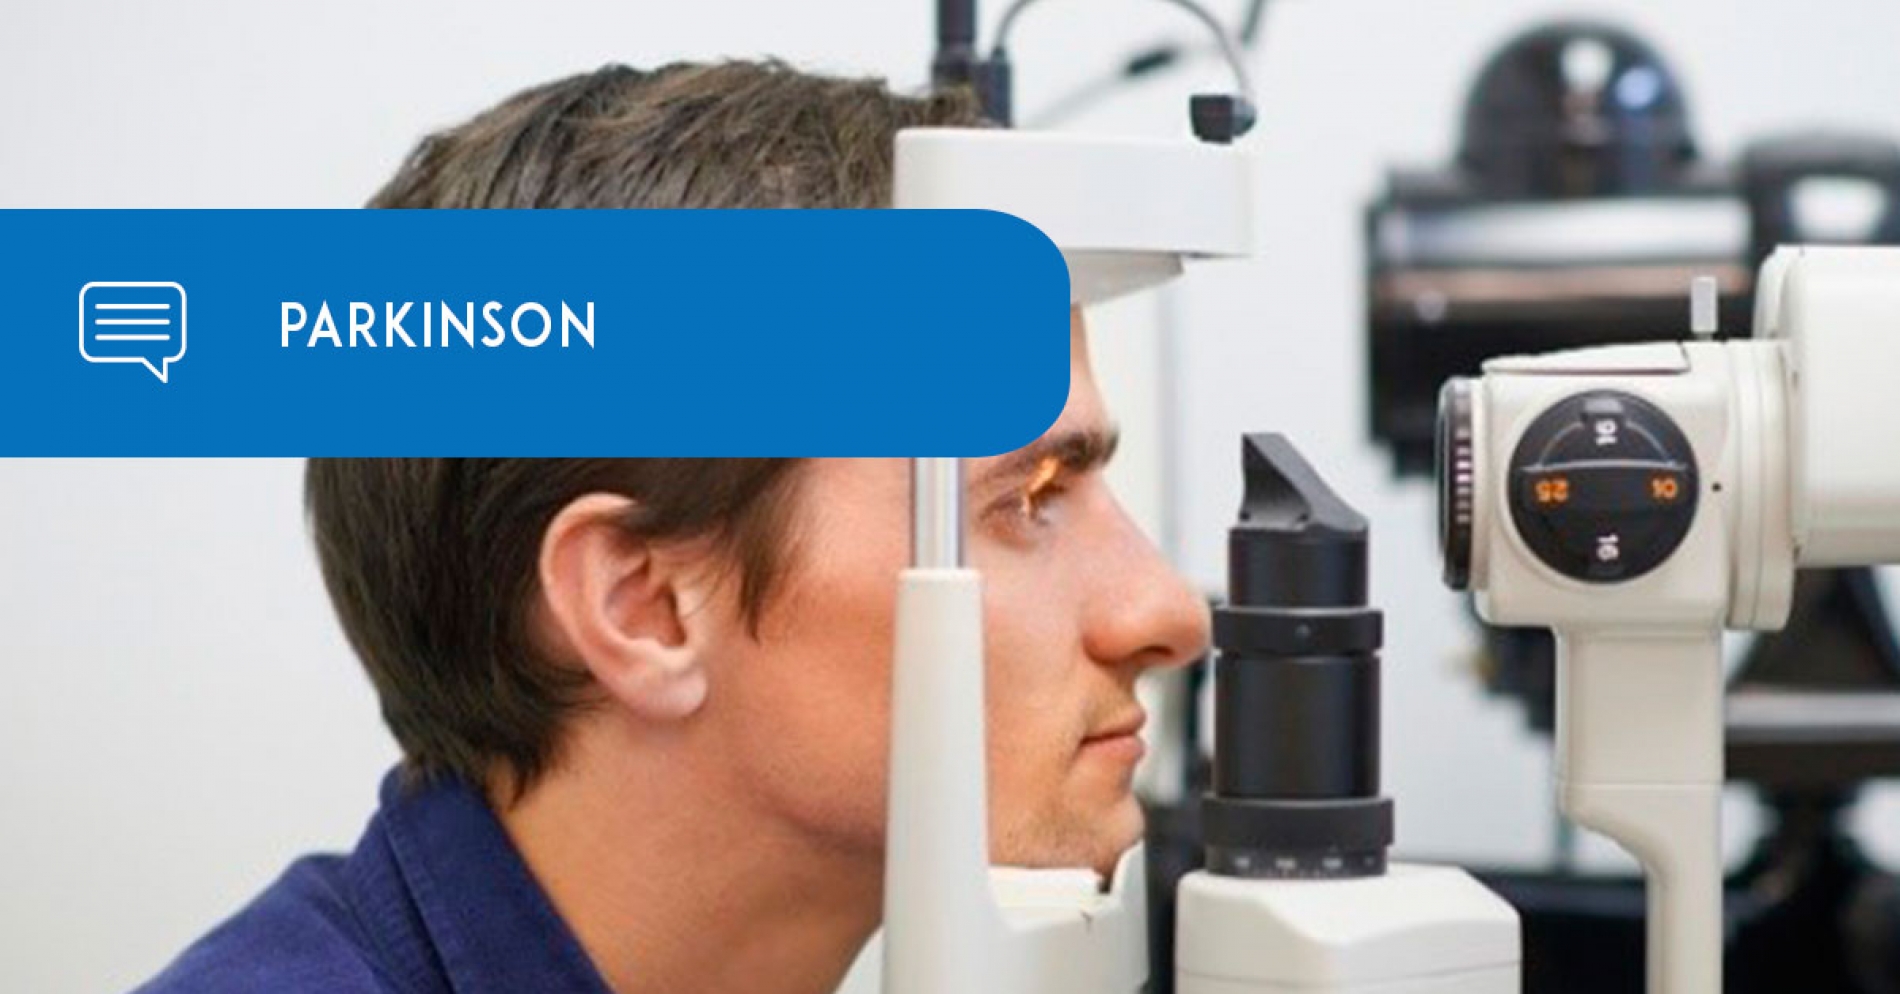 Exame de vista pode vir a detectar Parkinson antes mesmo de primeiros sintomas - Eduardo Paulino